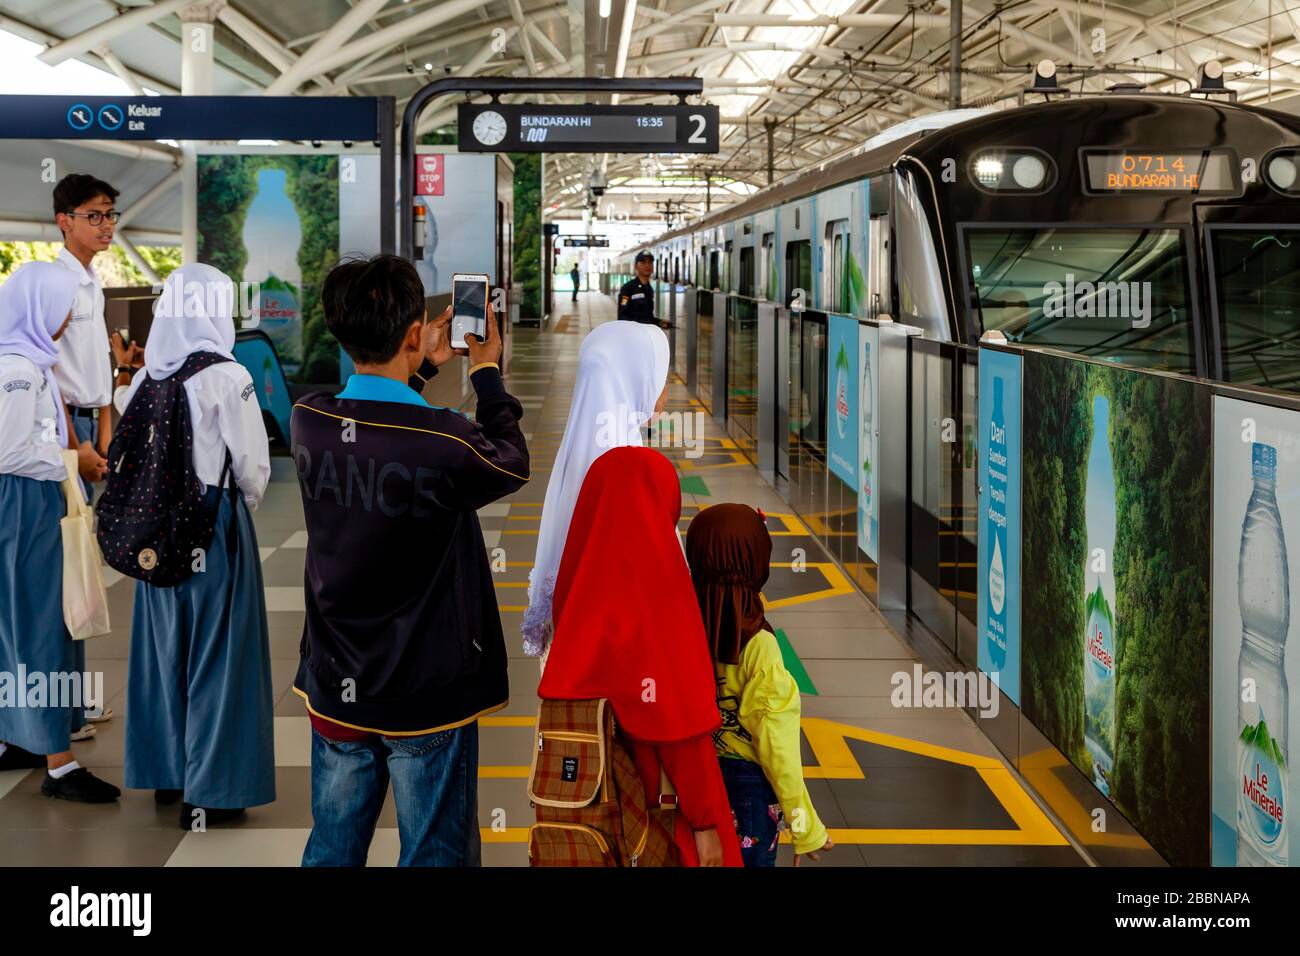 Une famille indonésienne attend sur la plate-forme de la gare comme un train approche, le métro (MRT), Jakarta, Indonésie. Banque D'Images